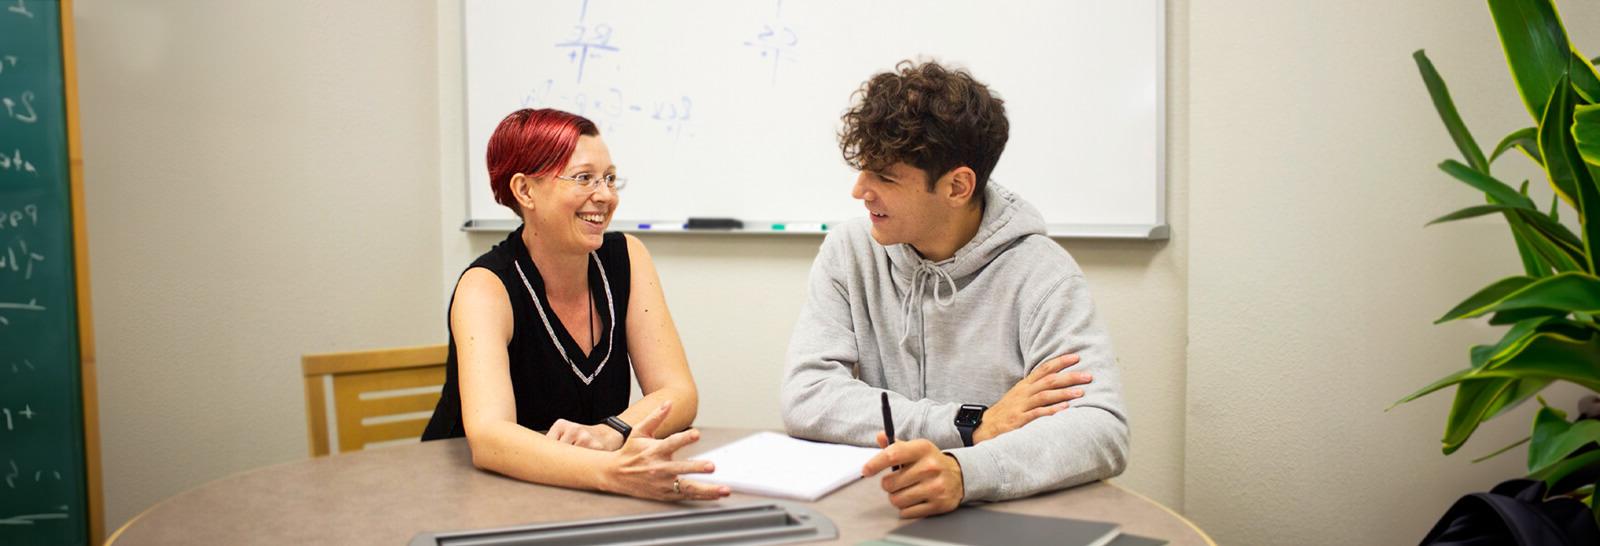 萨曼莎Overton teaches a student at Pima's West Campus.